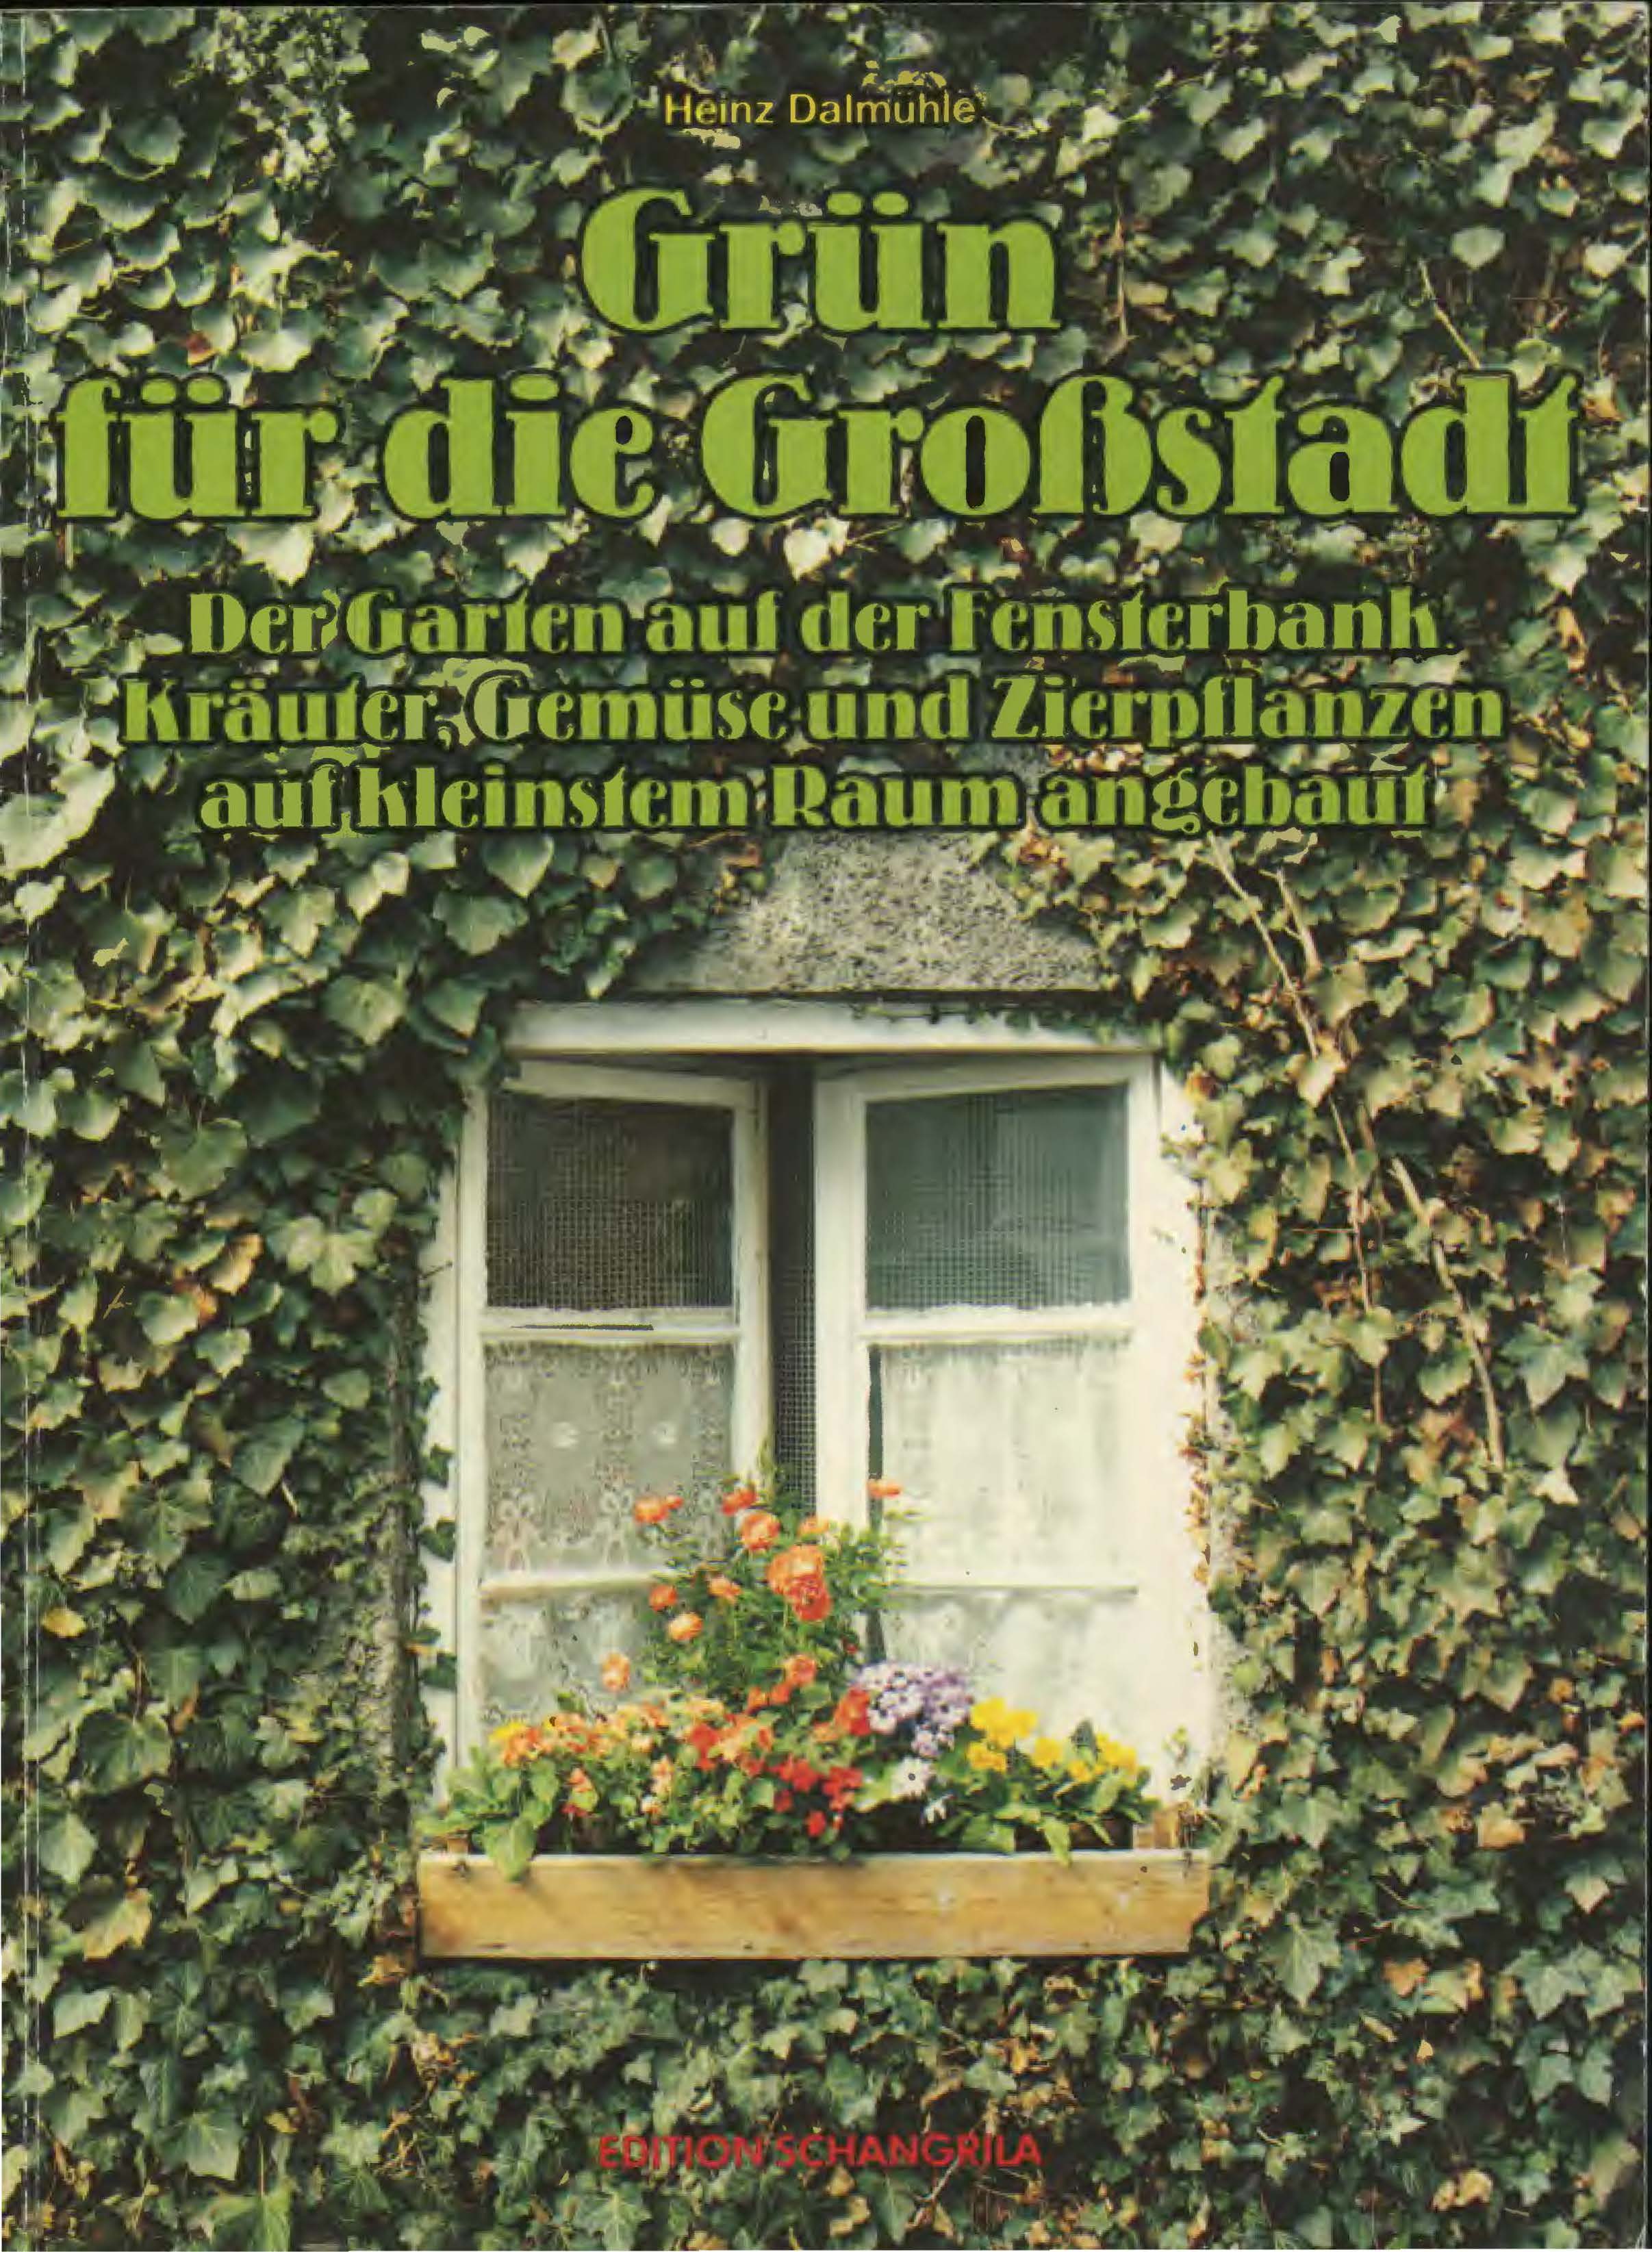 grün für die Grossstadt Heinz dalmühle_Seite_1